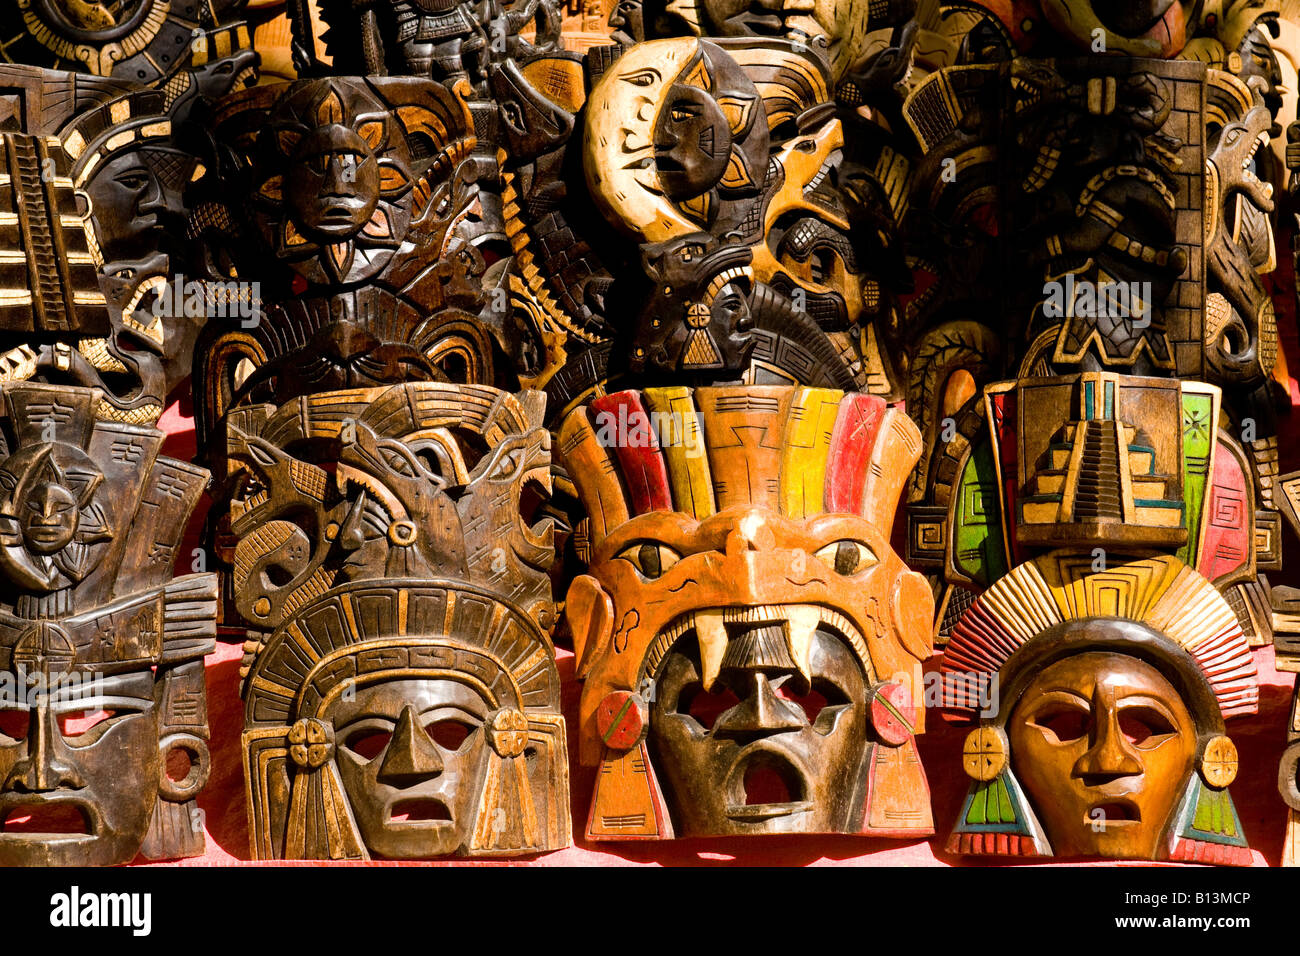 Souvenirs for sale at Chichen Itza Mexico Stock Photo